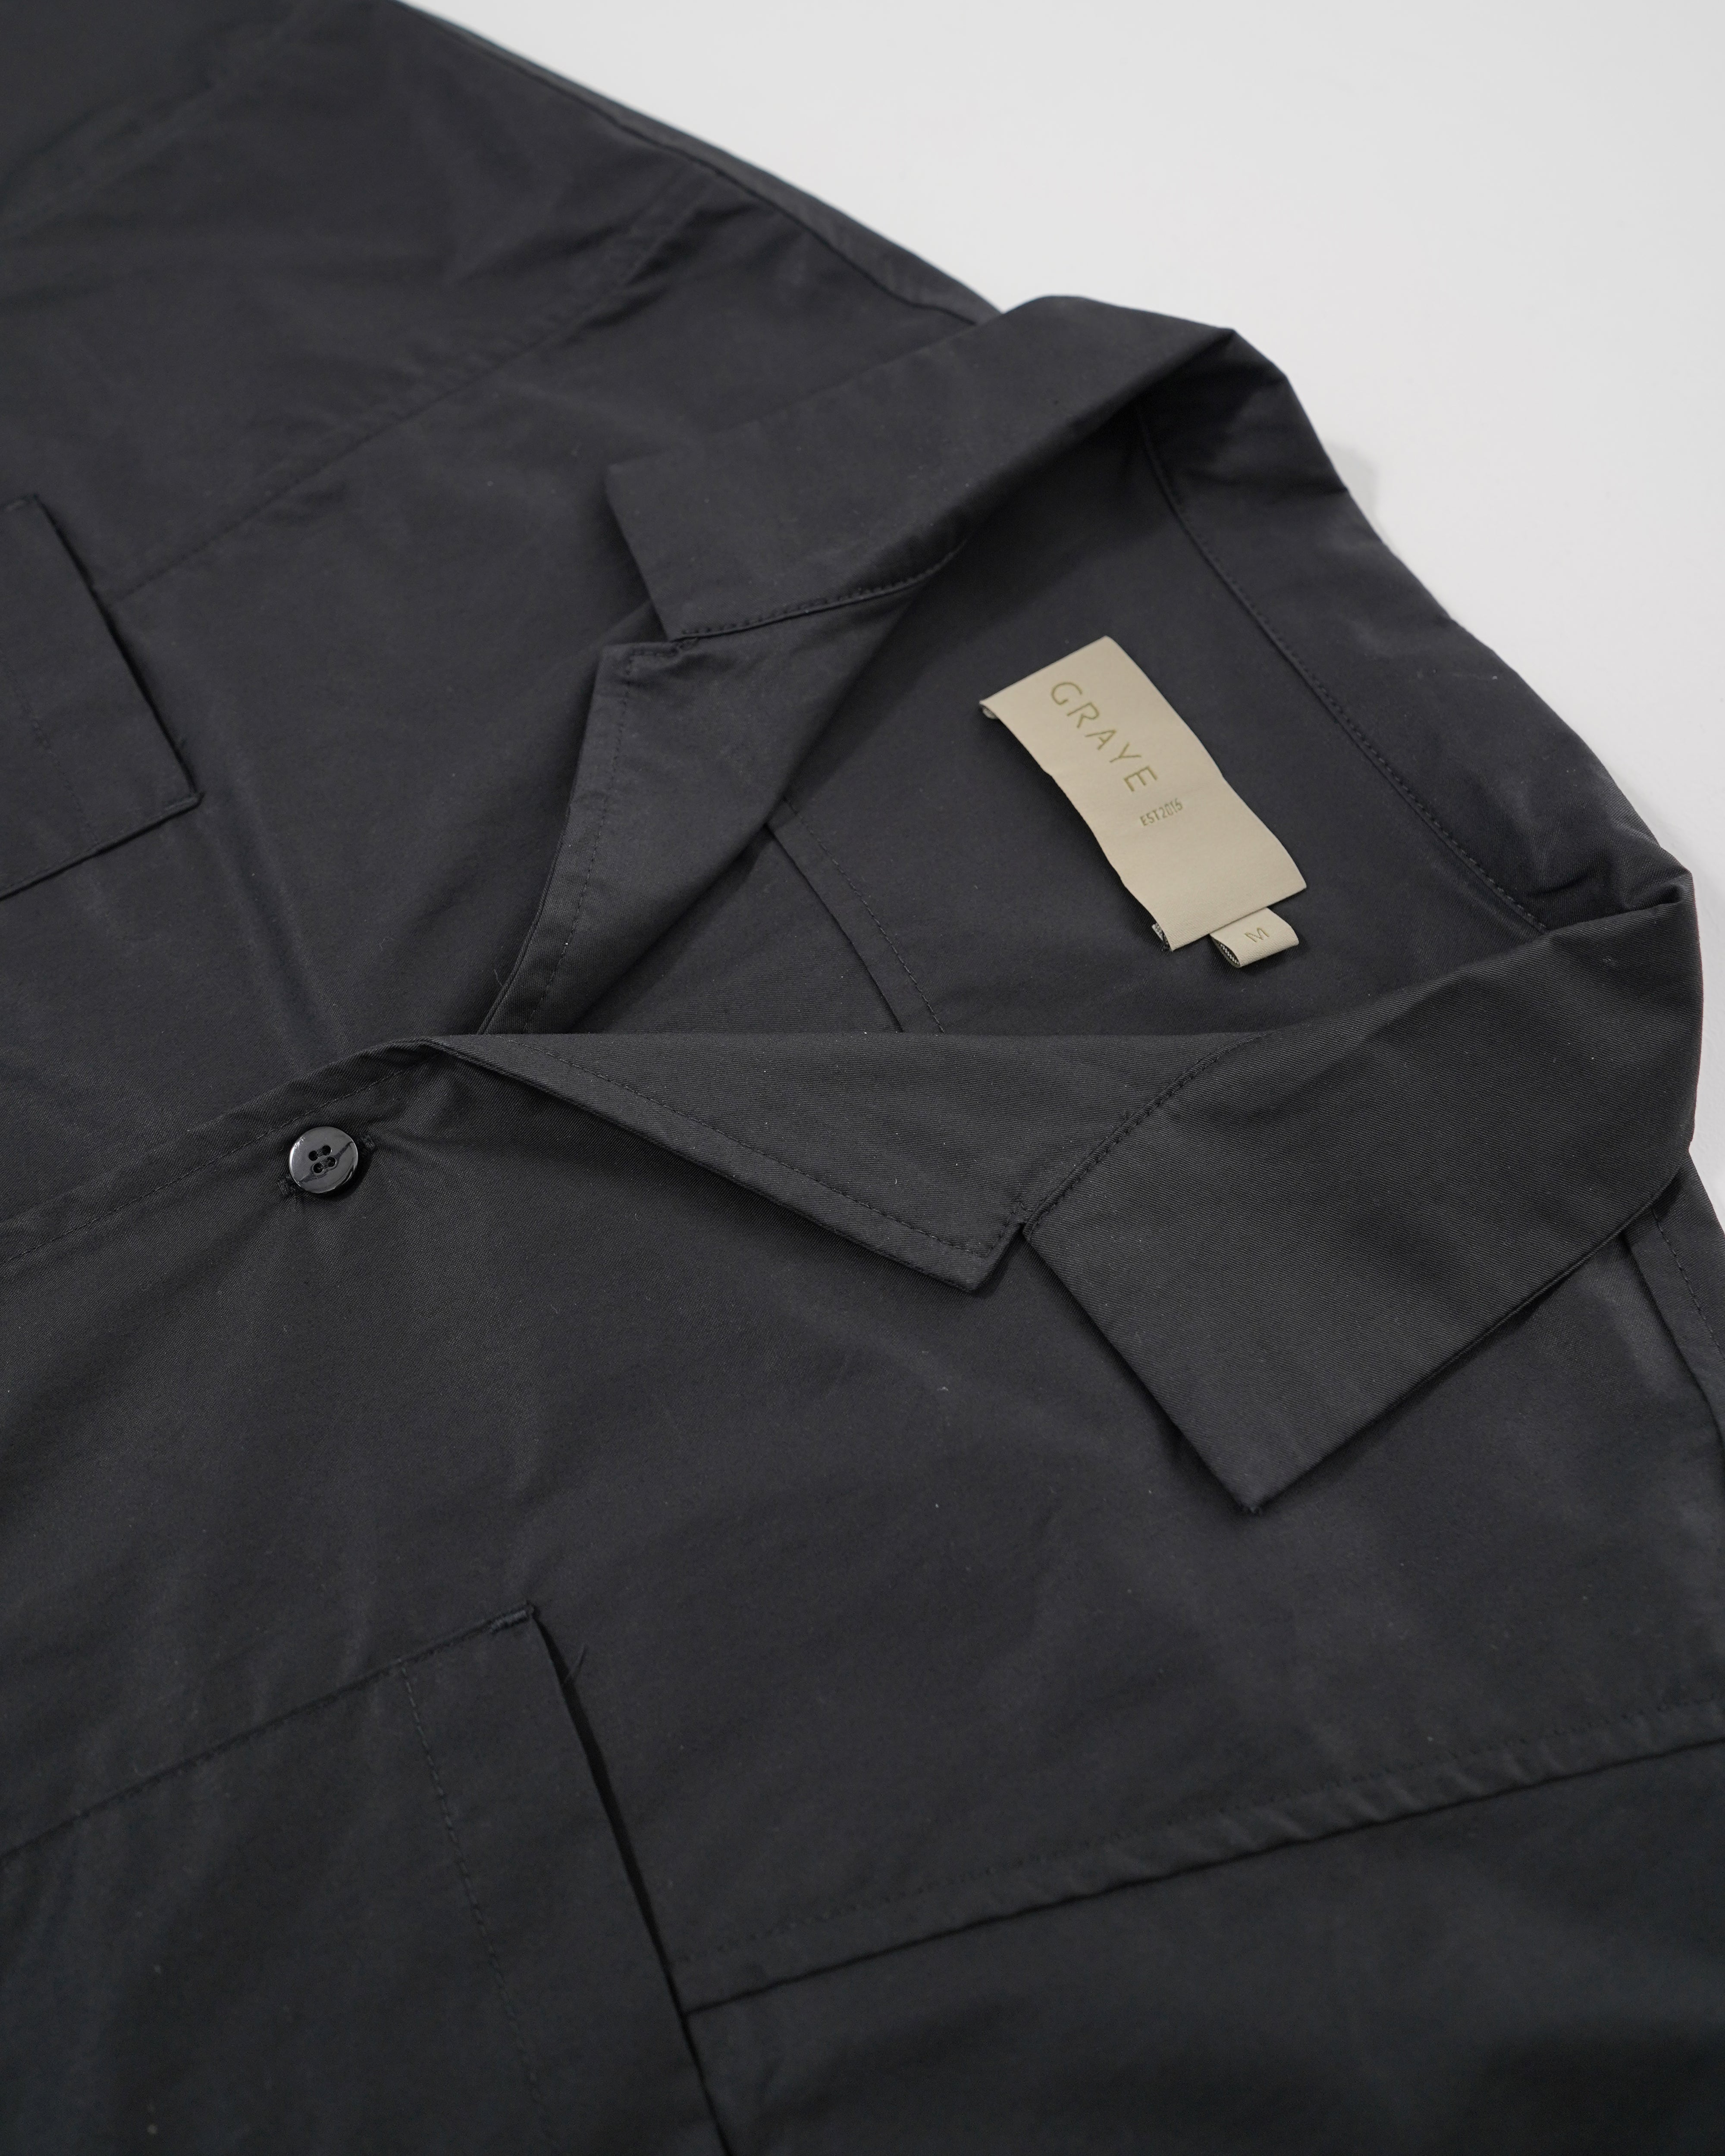 Seamline Curved Pocket Panel Top - Black